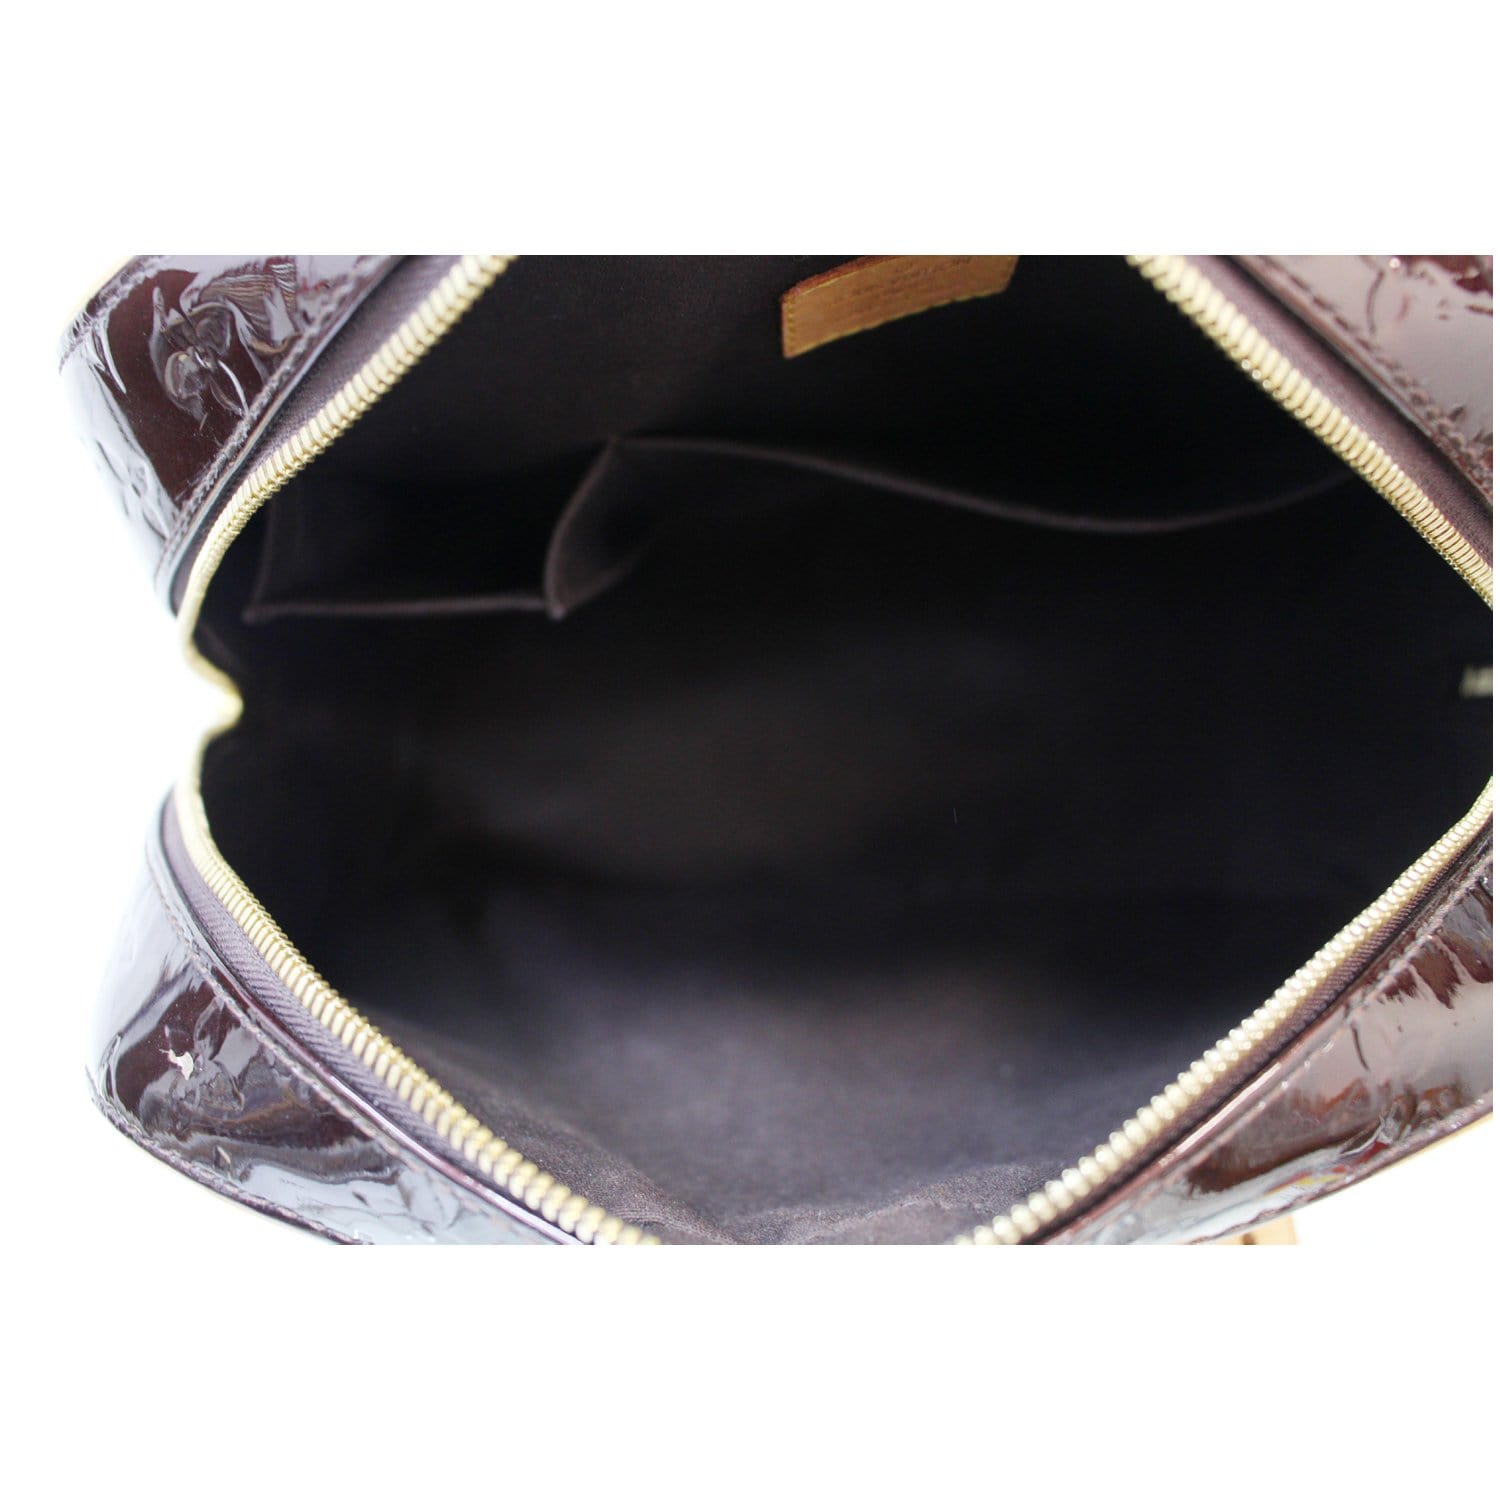 Sold at Auction: Louis Vuitton, Louis Vuitton Amarante Monogram Vernis  Summit Drive Handbag